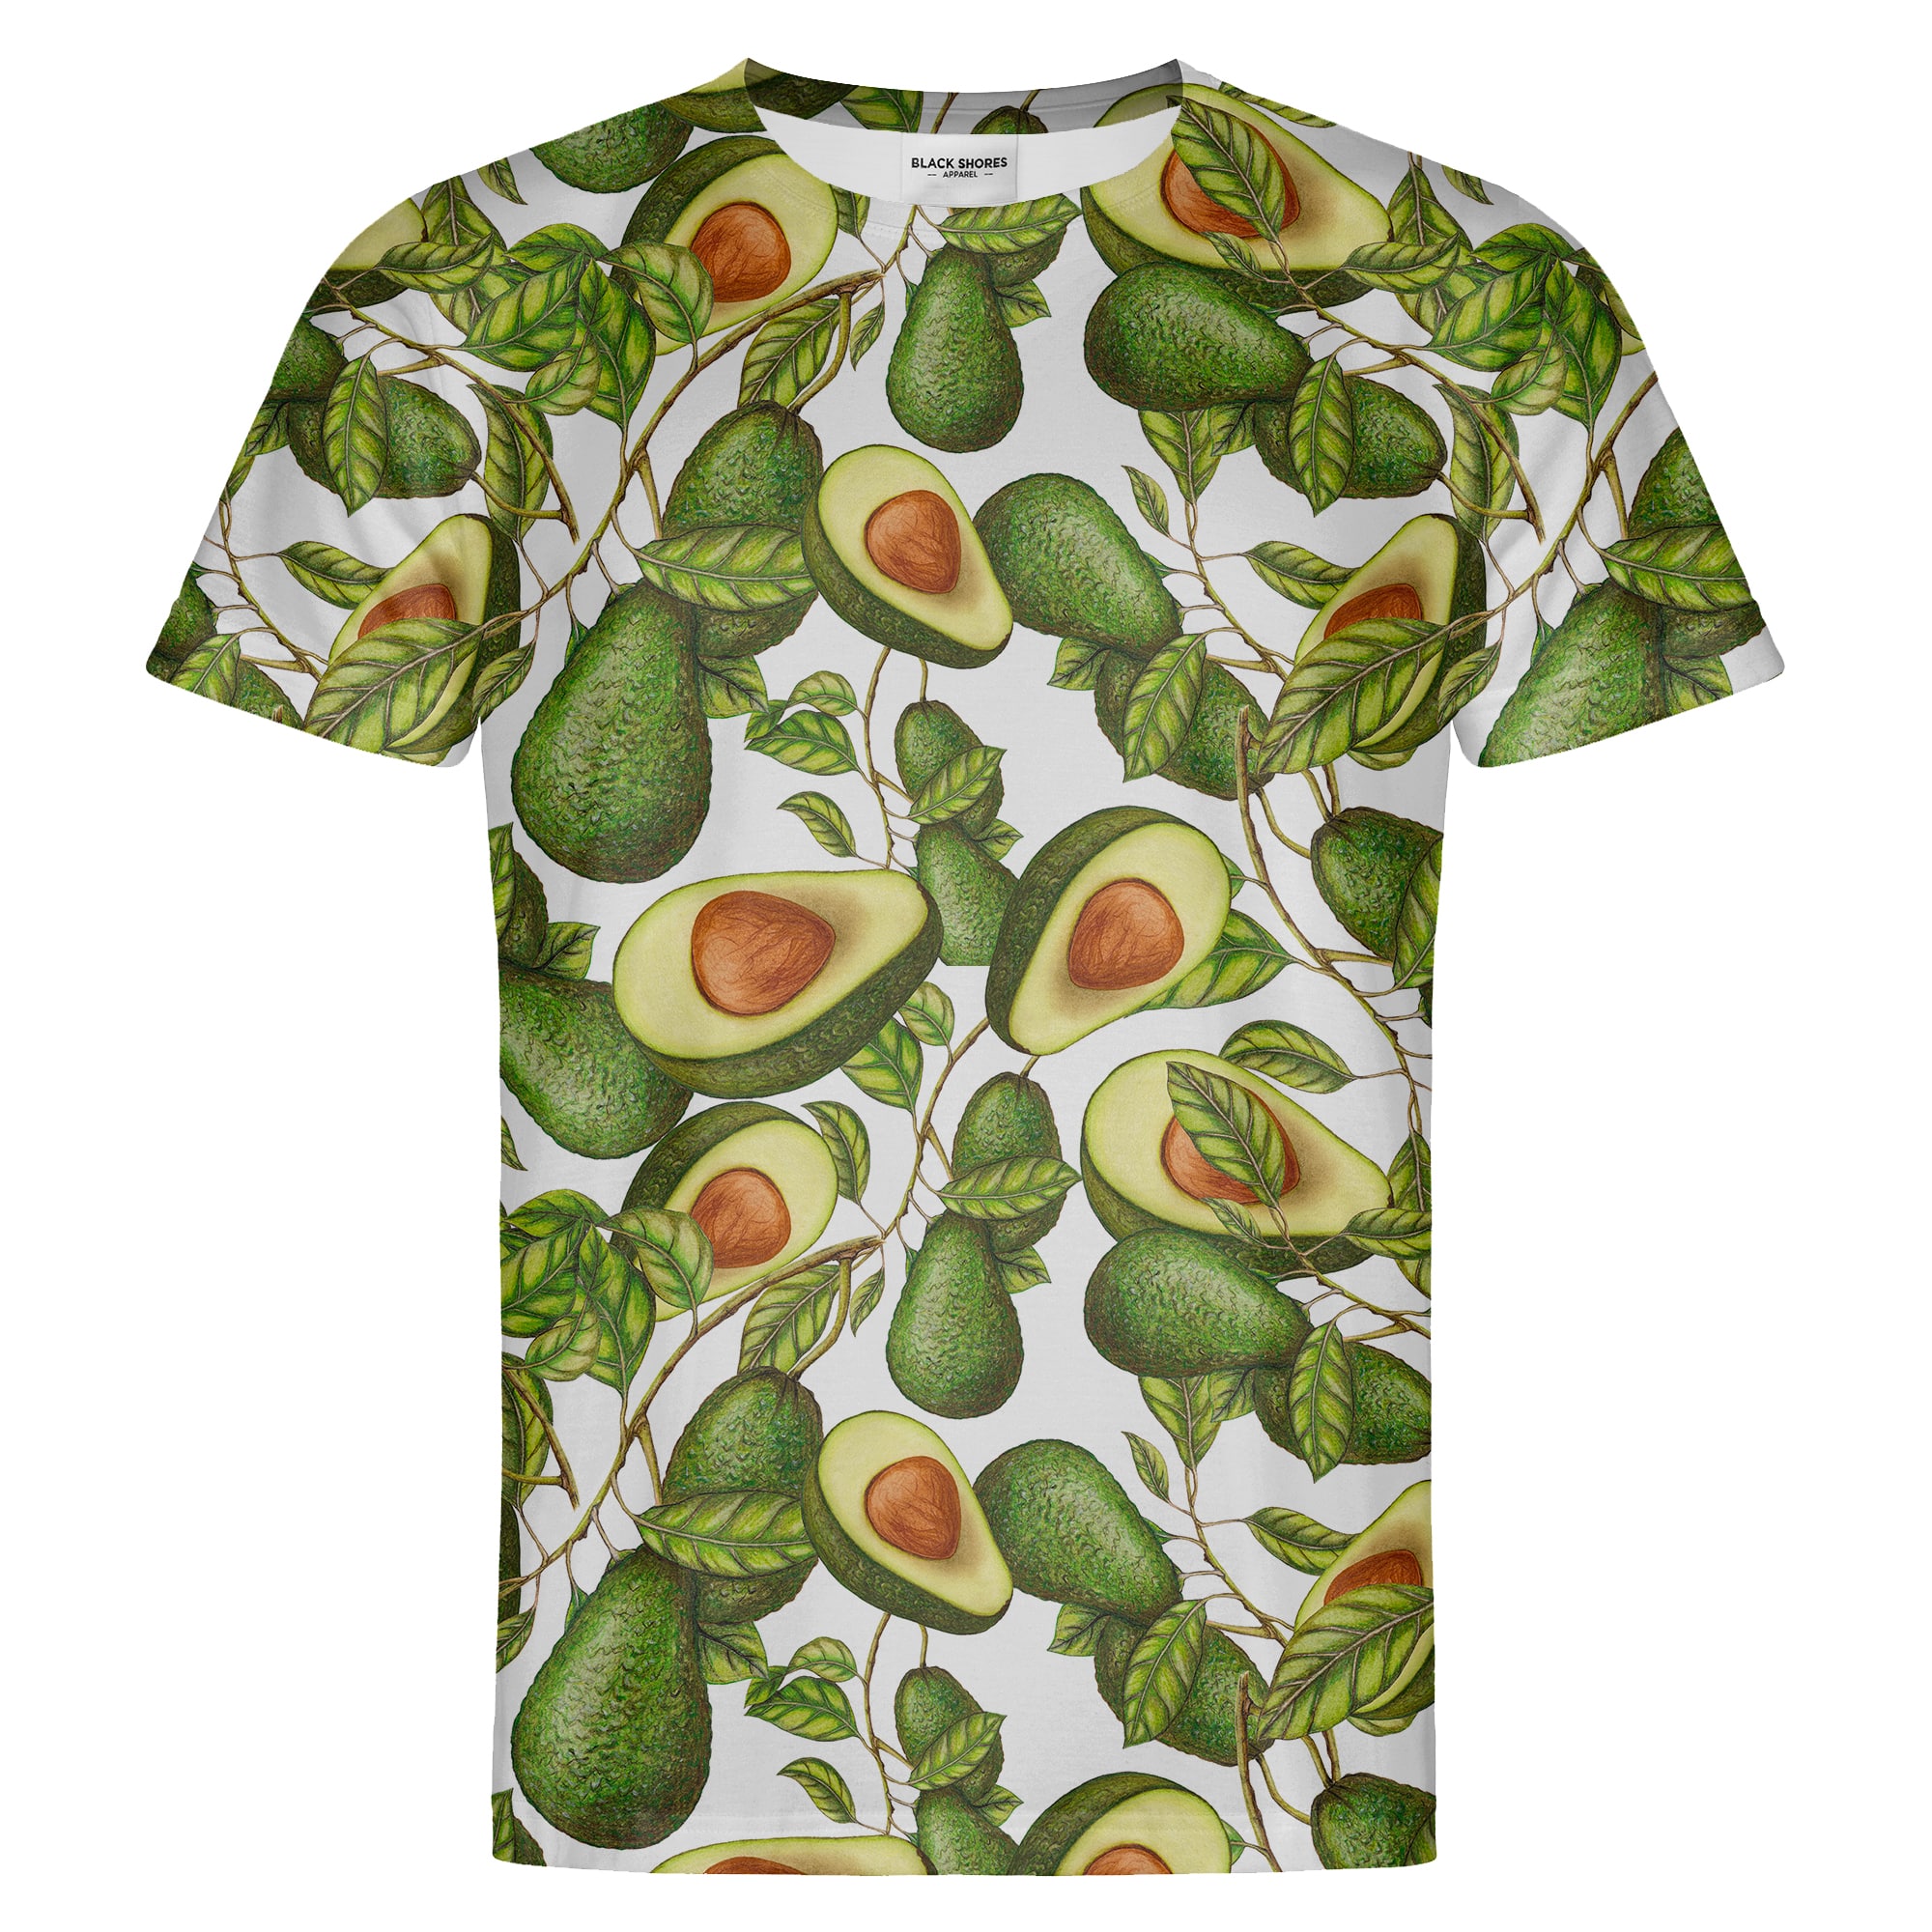 Avocado T-shirt – Black Shores - S